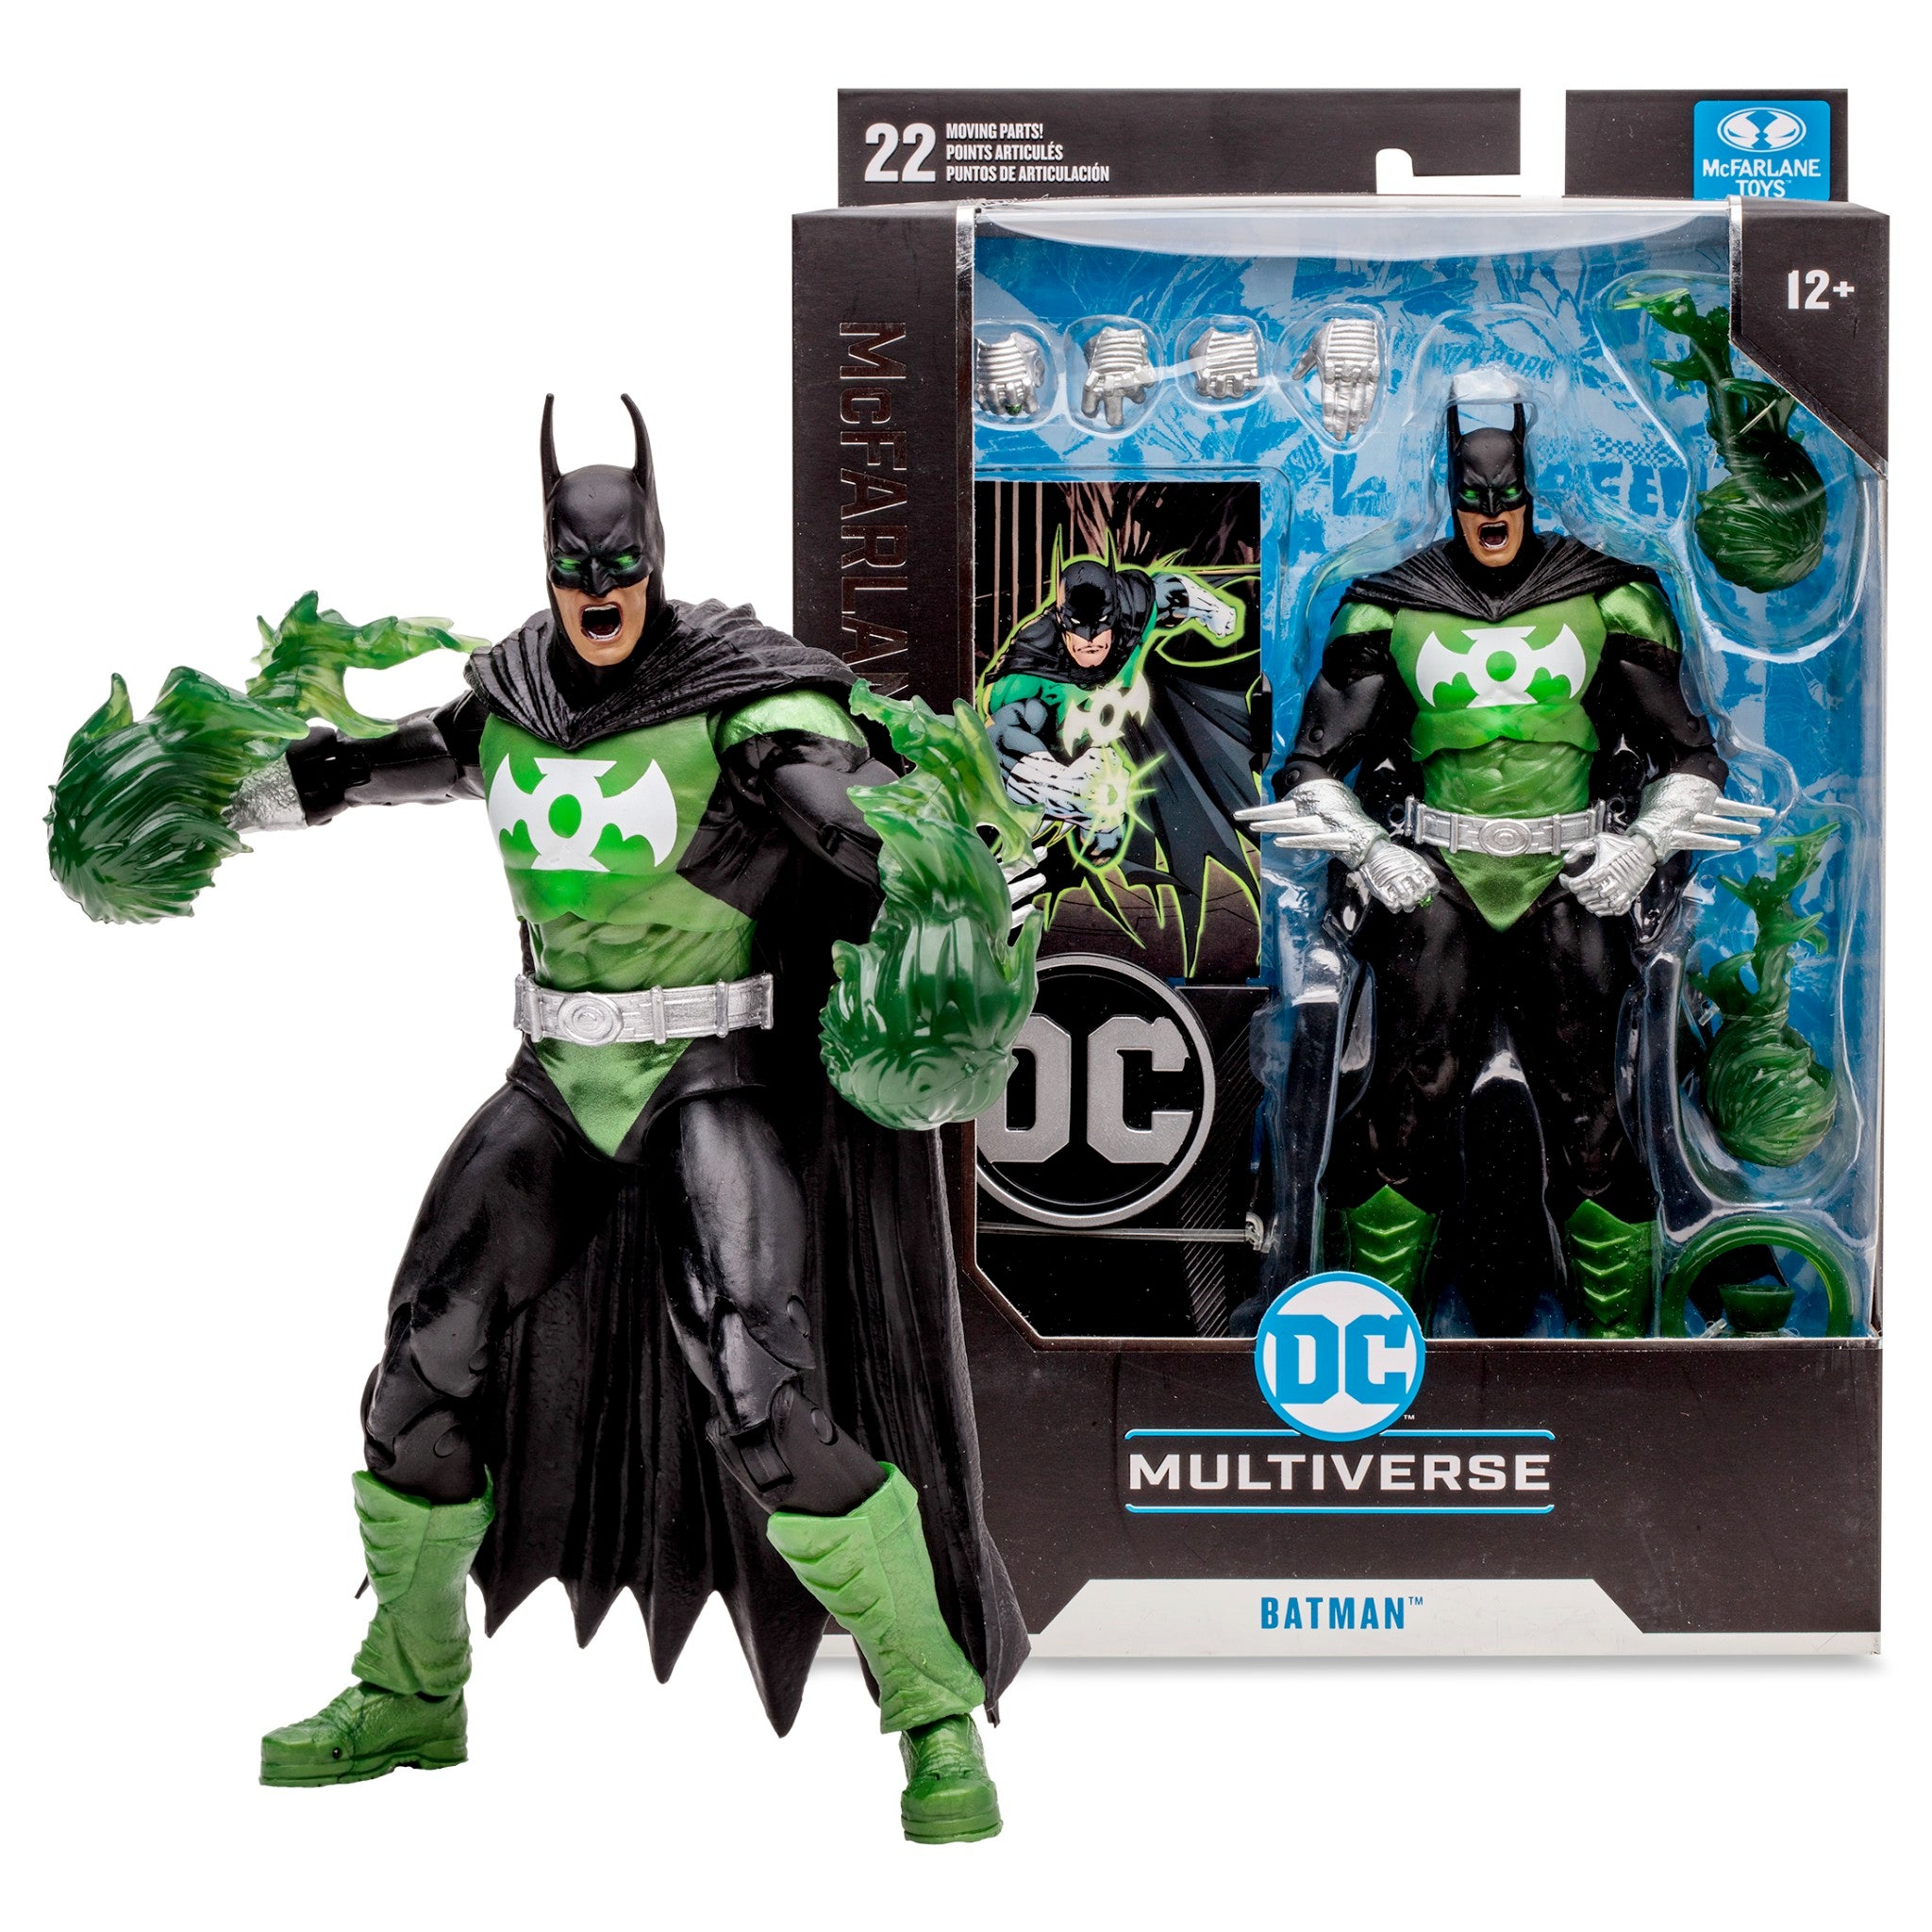 DC Multiverse Collector Edition Batman as Green Lantern - McFarlane Toys-1